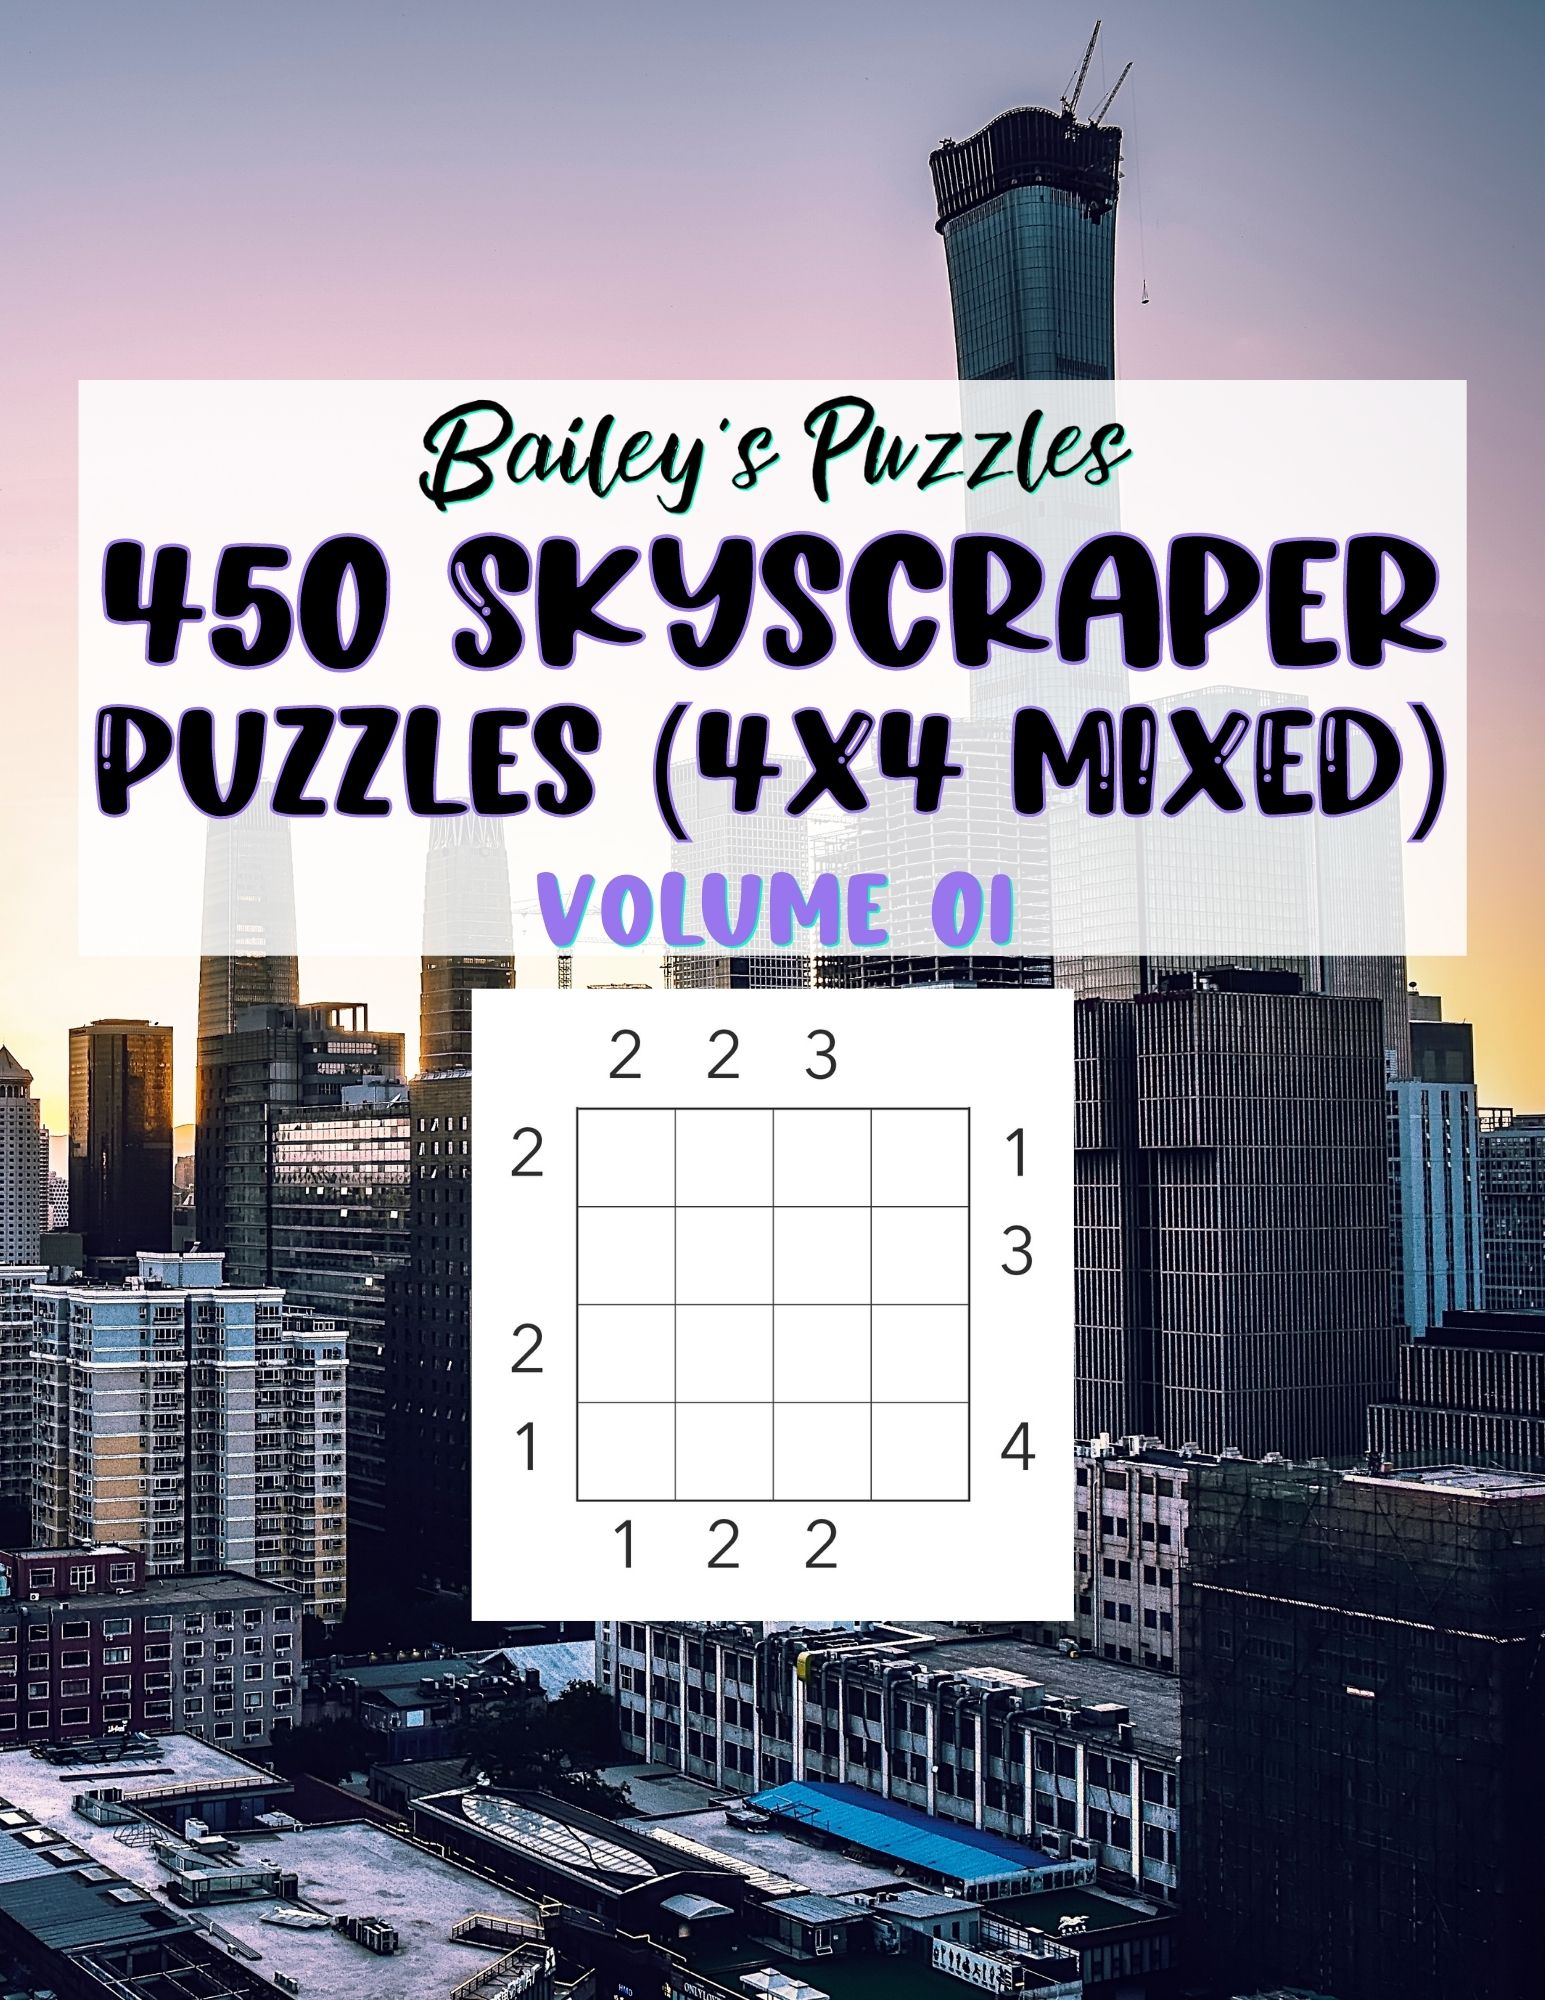 Front Cover - 450 Skyscraper Puzzles (4x4, mixed)